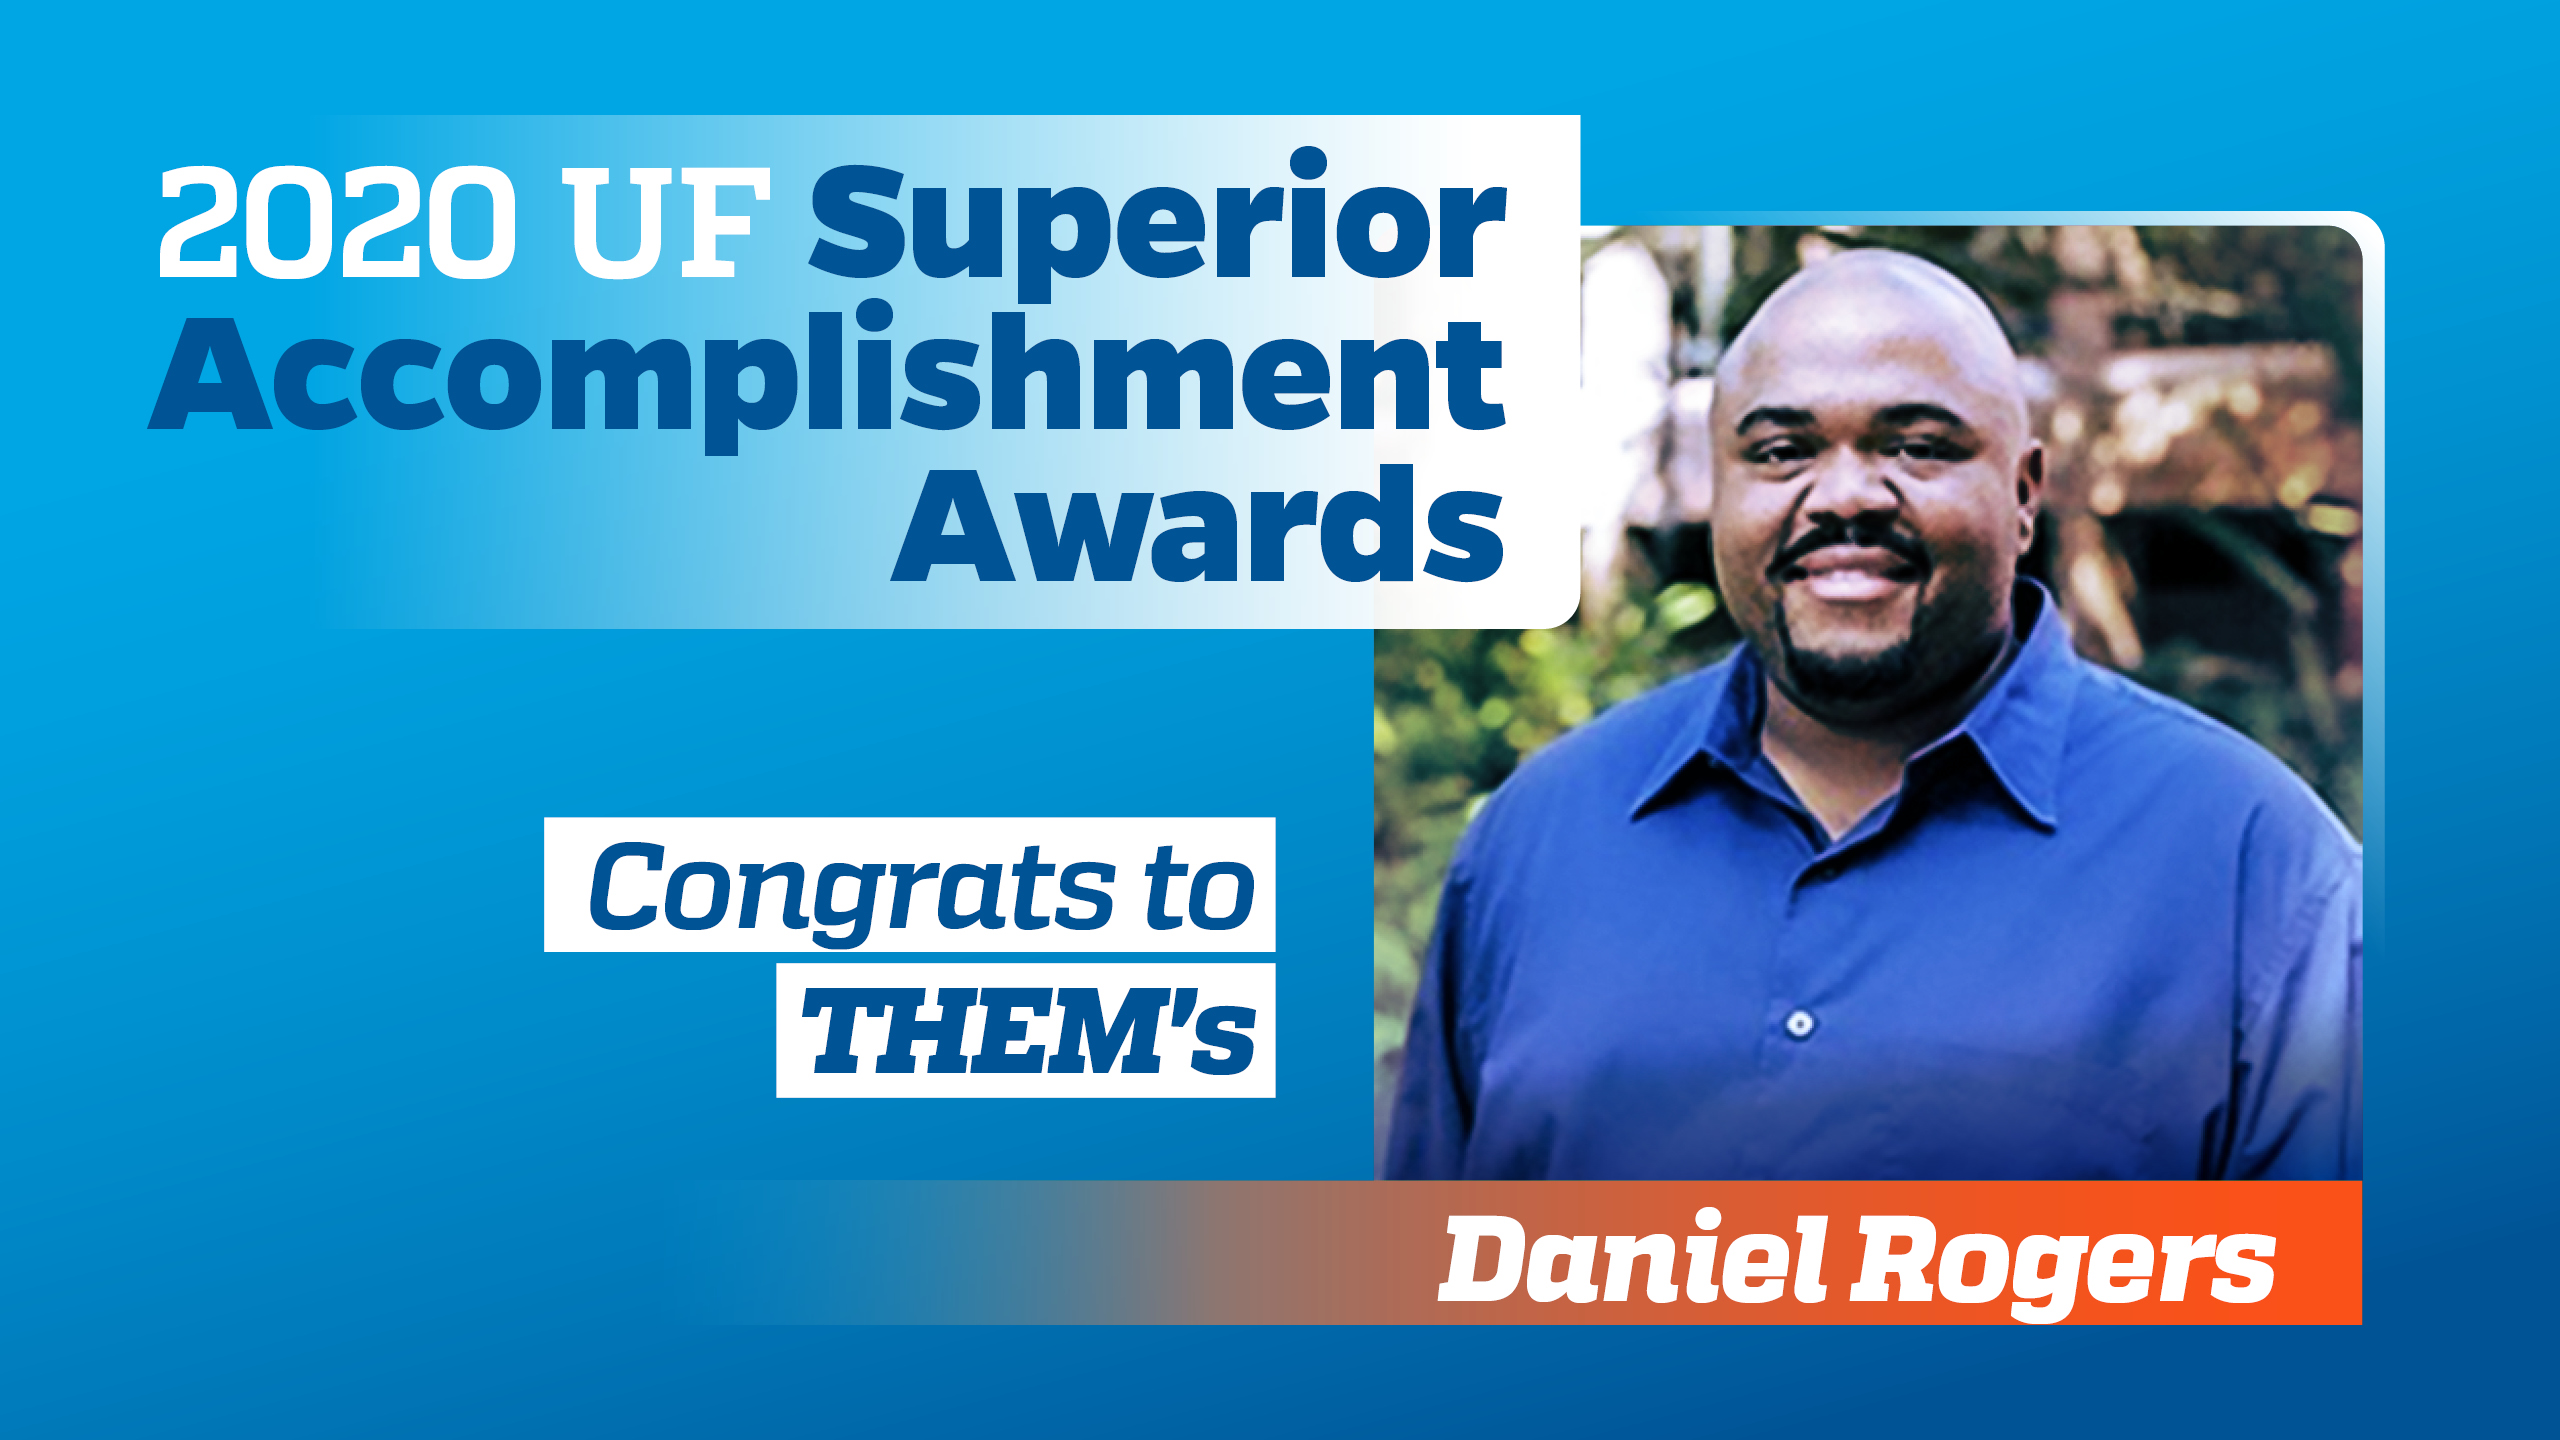 Daniel Rogers Earns Top UF Award